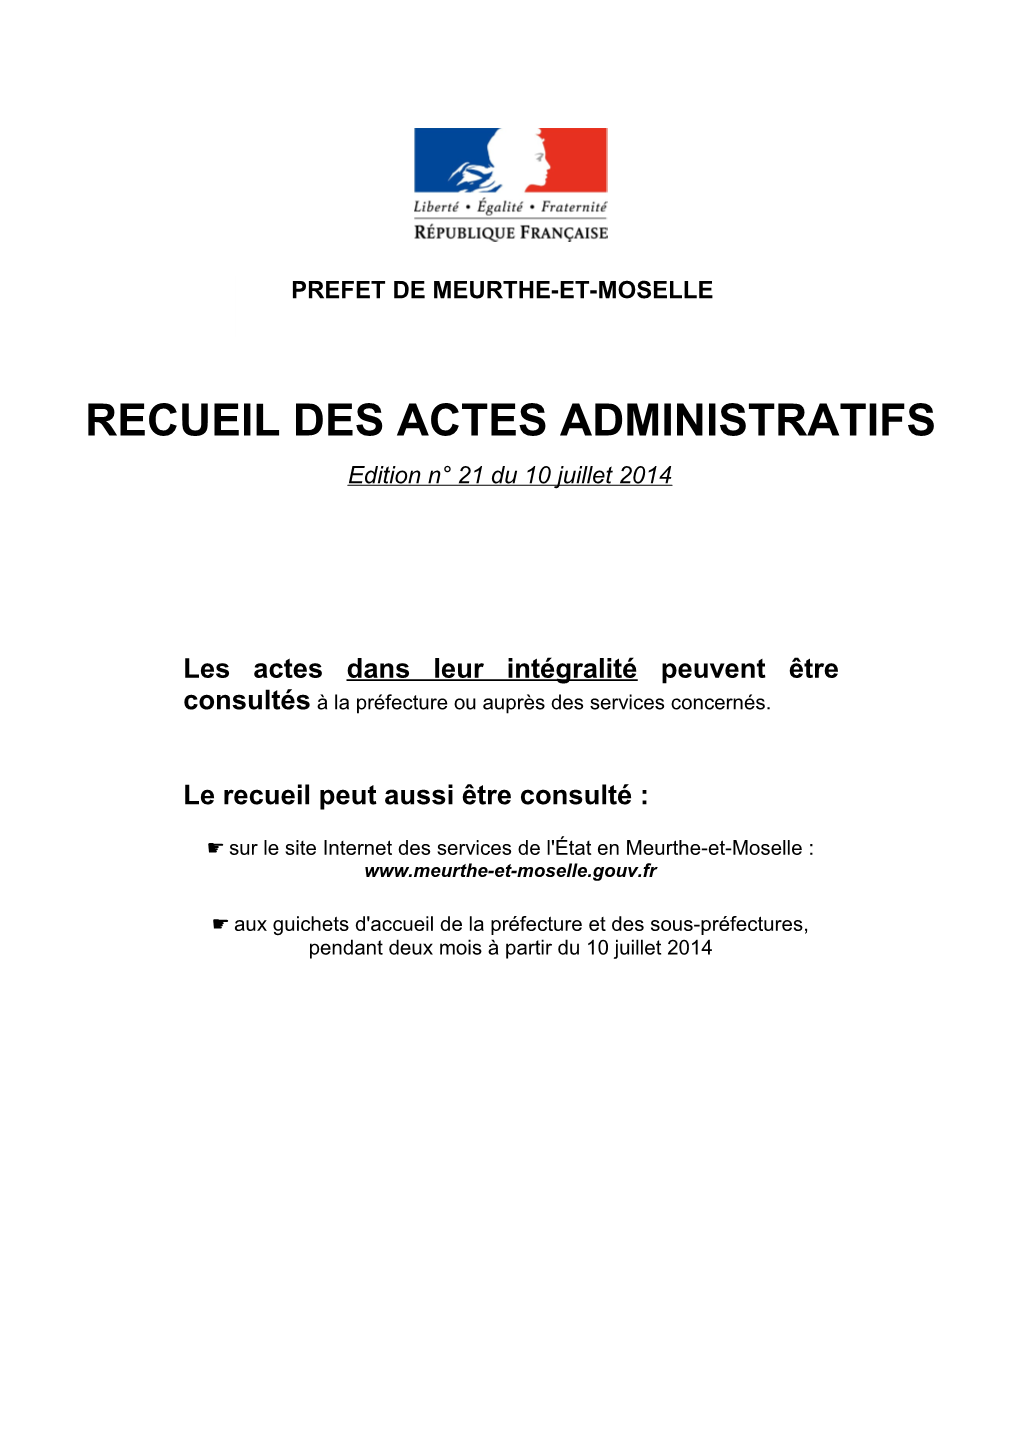 RECUEIL DES ACTES ADMINISTRATIFS Edition N° 21 Du 10 Juillet 2014